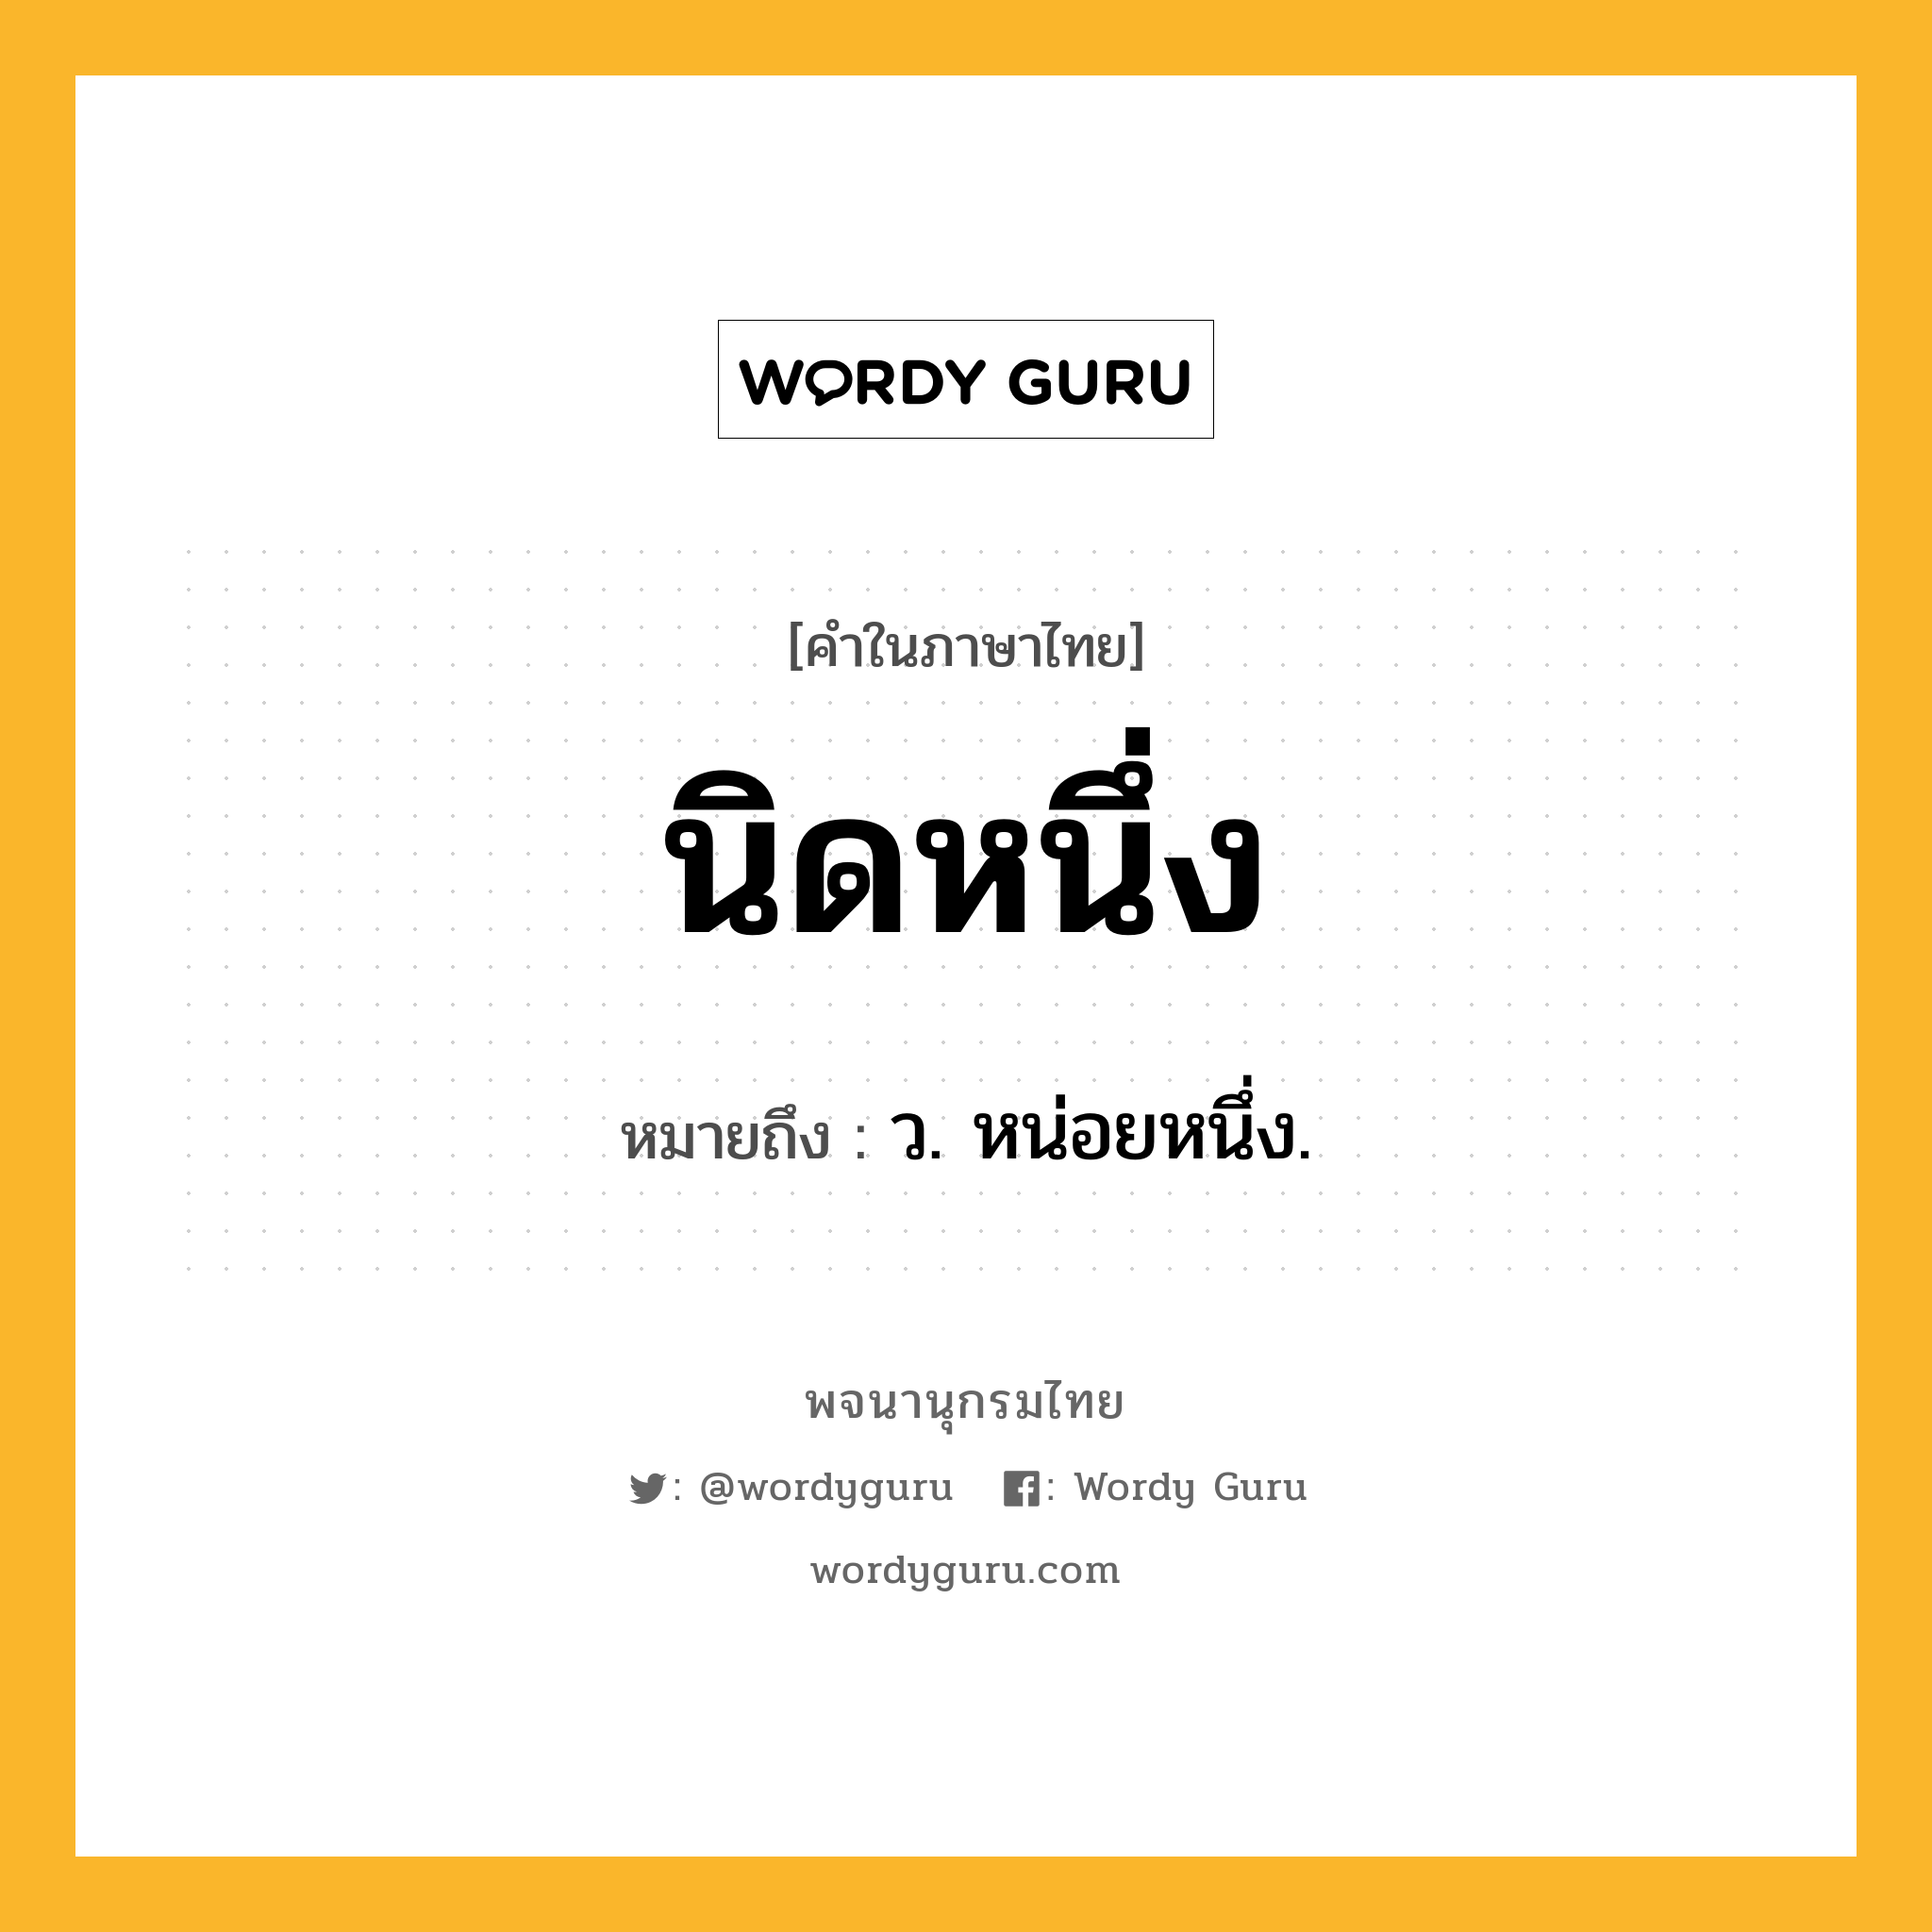 นิดหนึ่ง หมายถึงอะไร?, คำในภาษาไทย นิดหนึ่ง หมายถึง ว. หน่อยหนึ่ง.